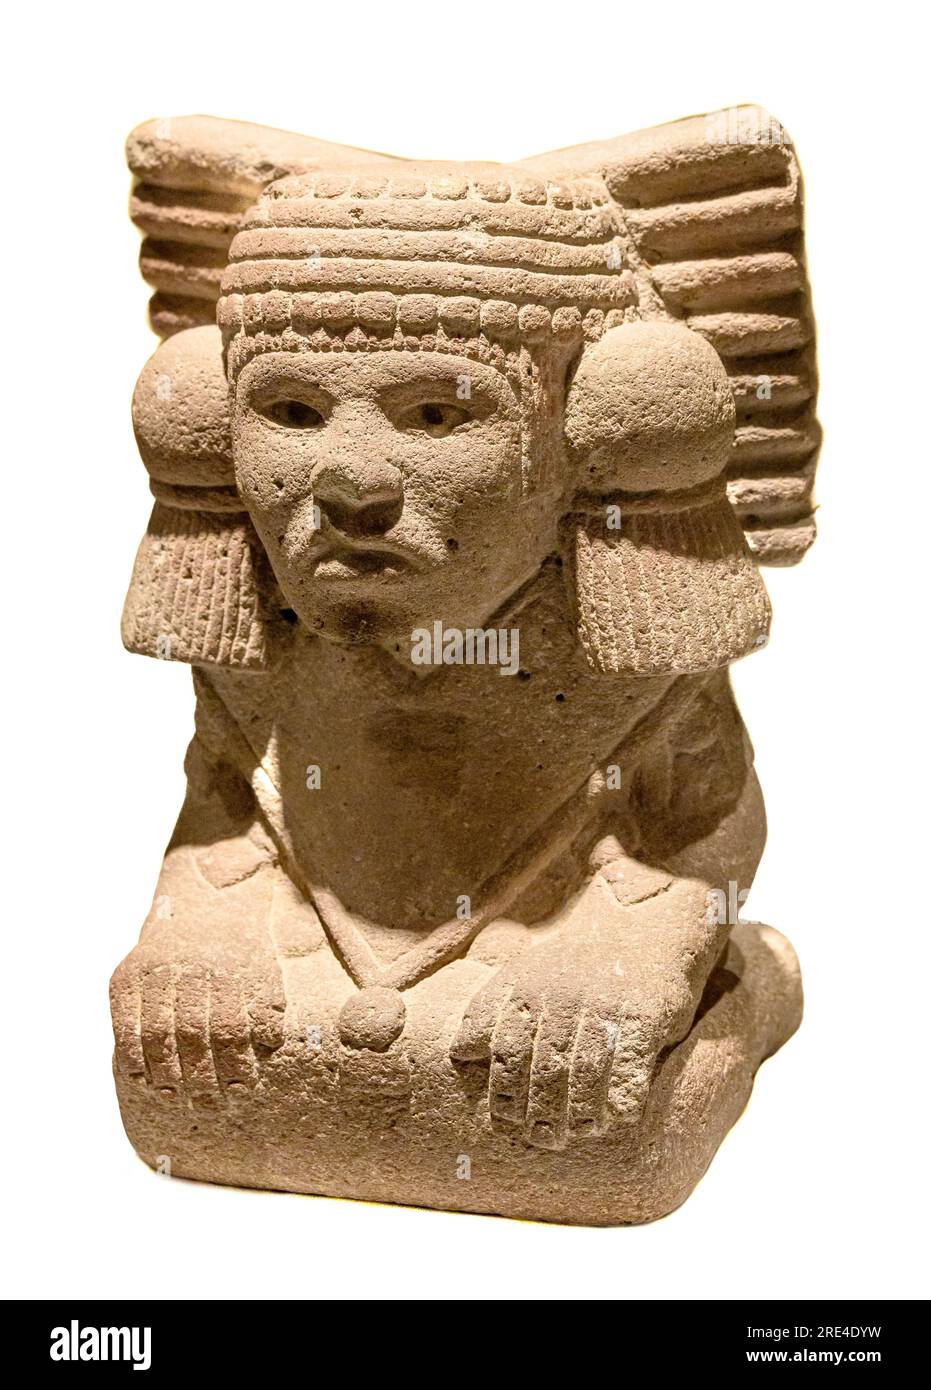 Une sculpture en pierre représentant la déesse aztèque de l'eau, Chalchiuhtlicue. (1350-1521) Mexique. Au Musée des amériques, Madrid. Banque D'Images